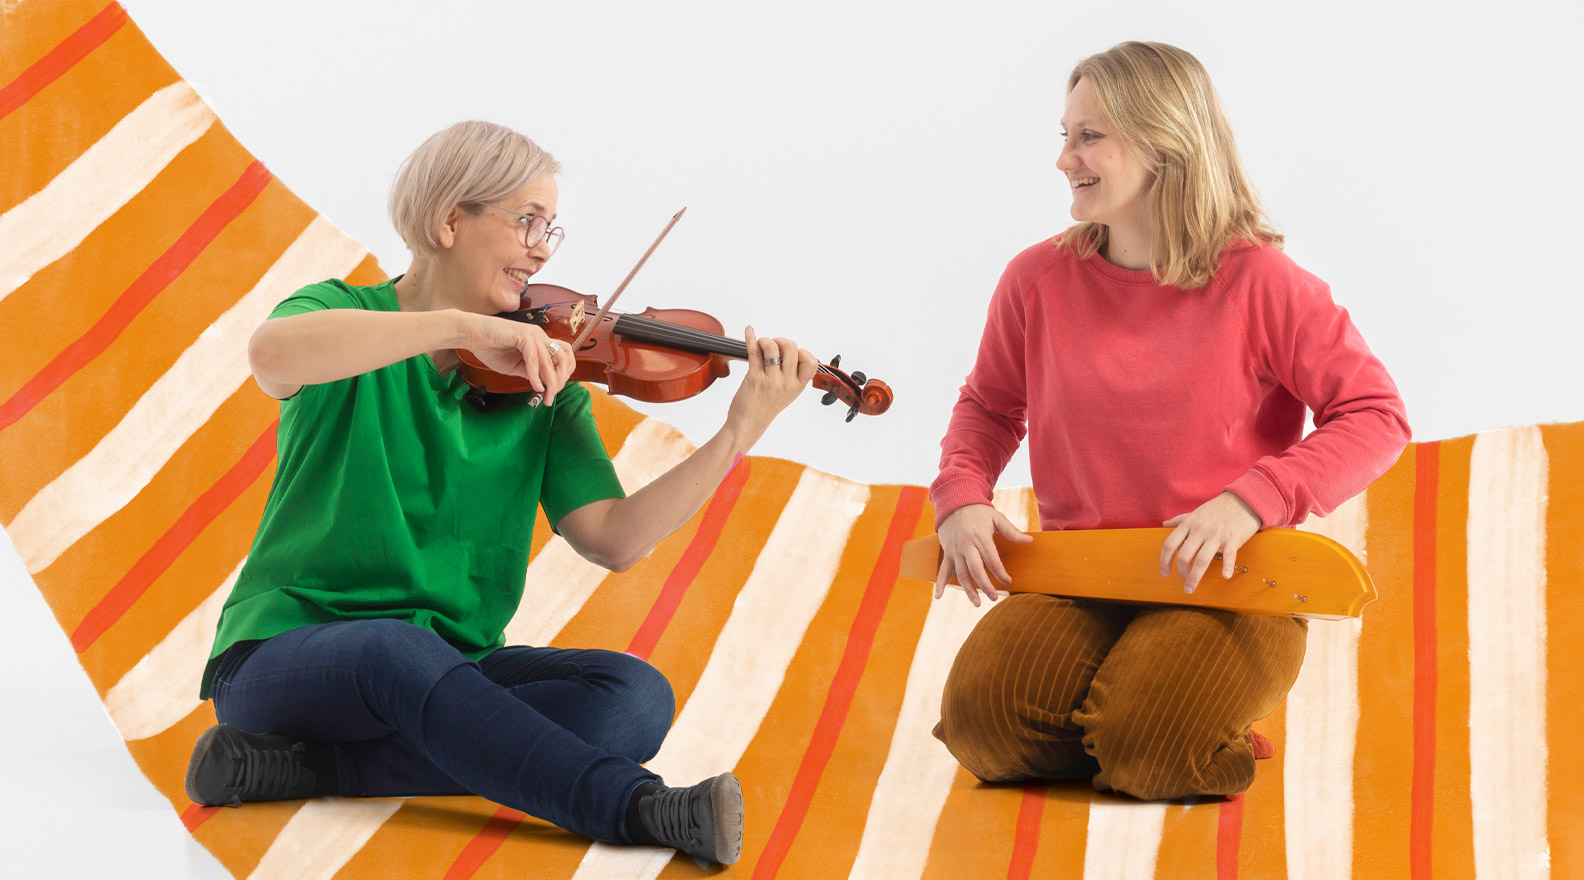 Kaksi naista istuu lattialla. Toinen naisista soittaa viulua, toinen kanteletta. Kuvaan on lisätty piirroskuvituksen muodossa raidallinen matto.